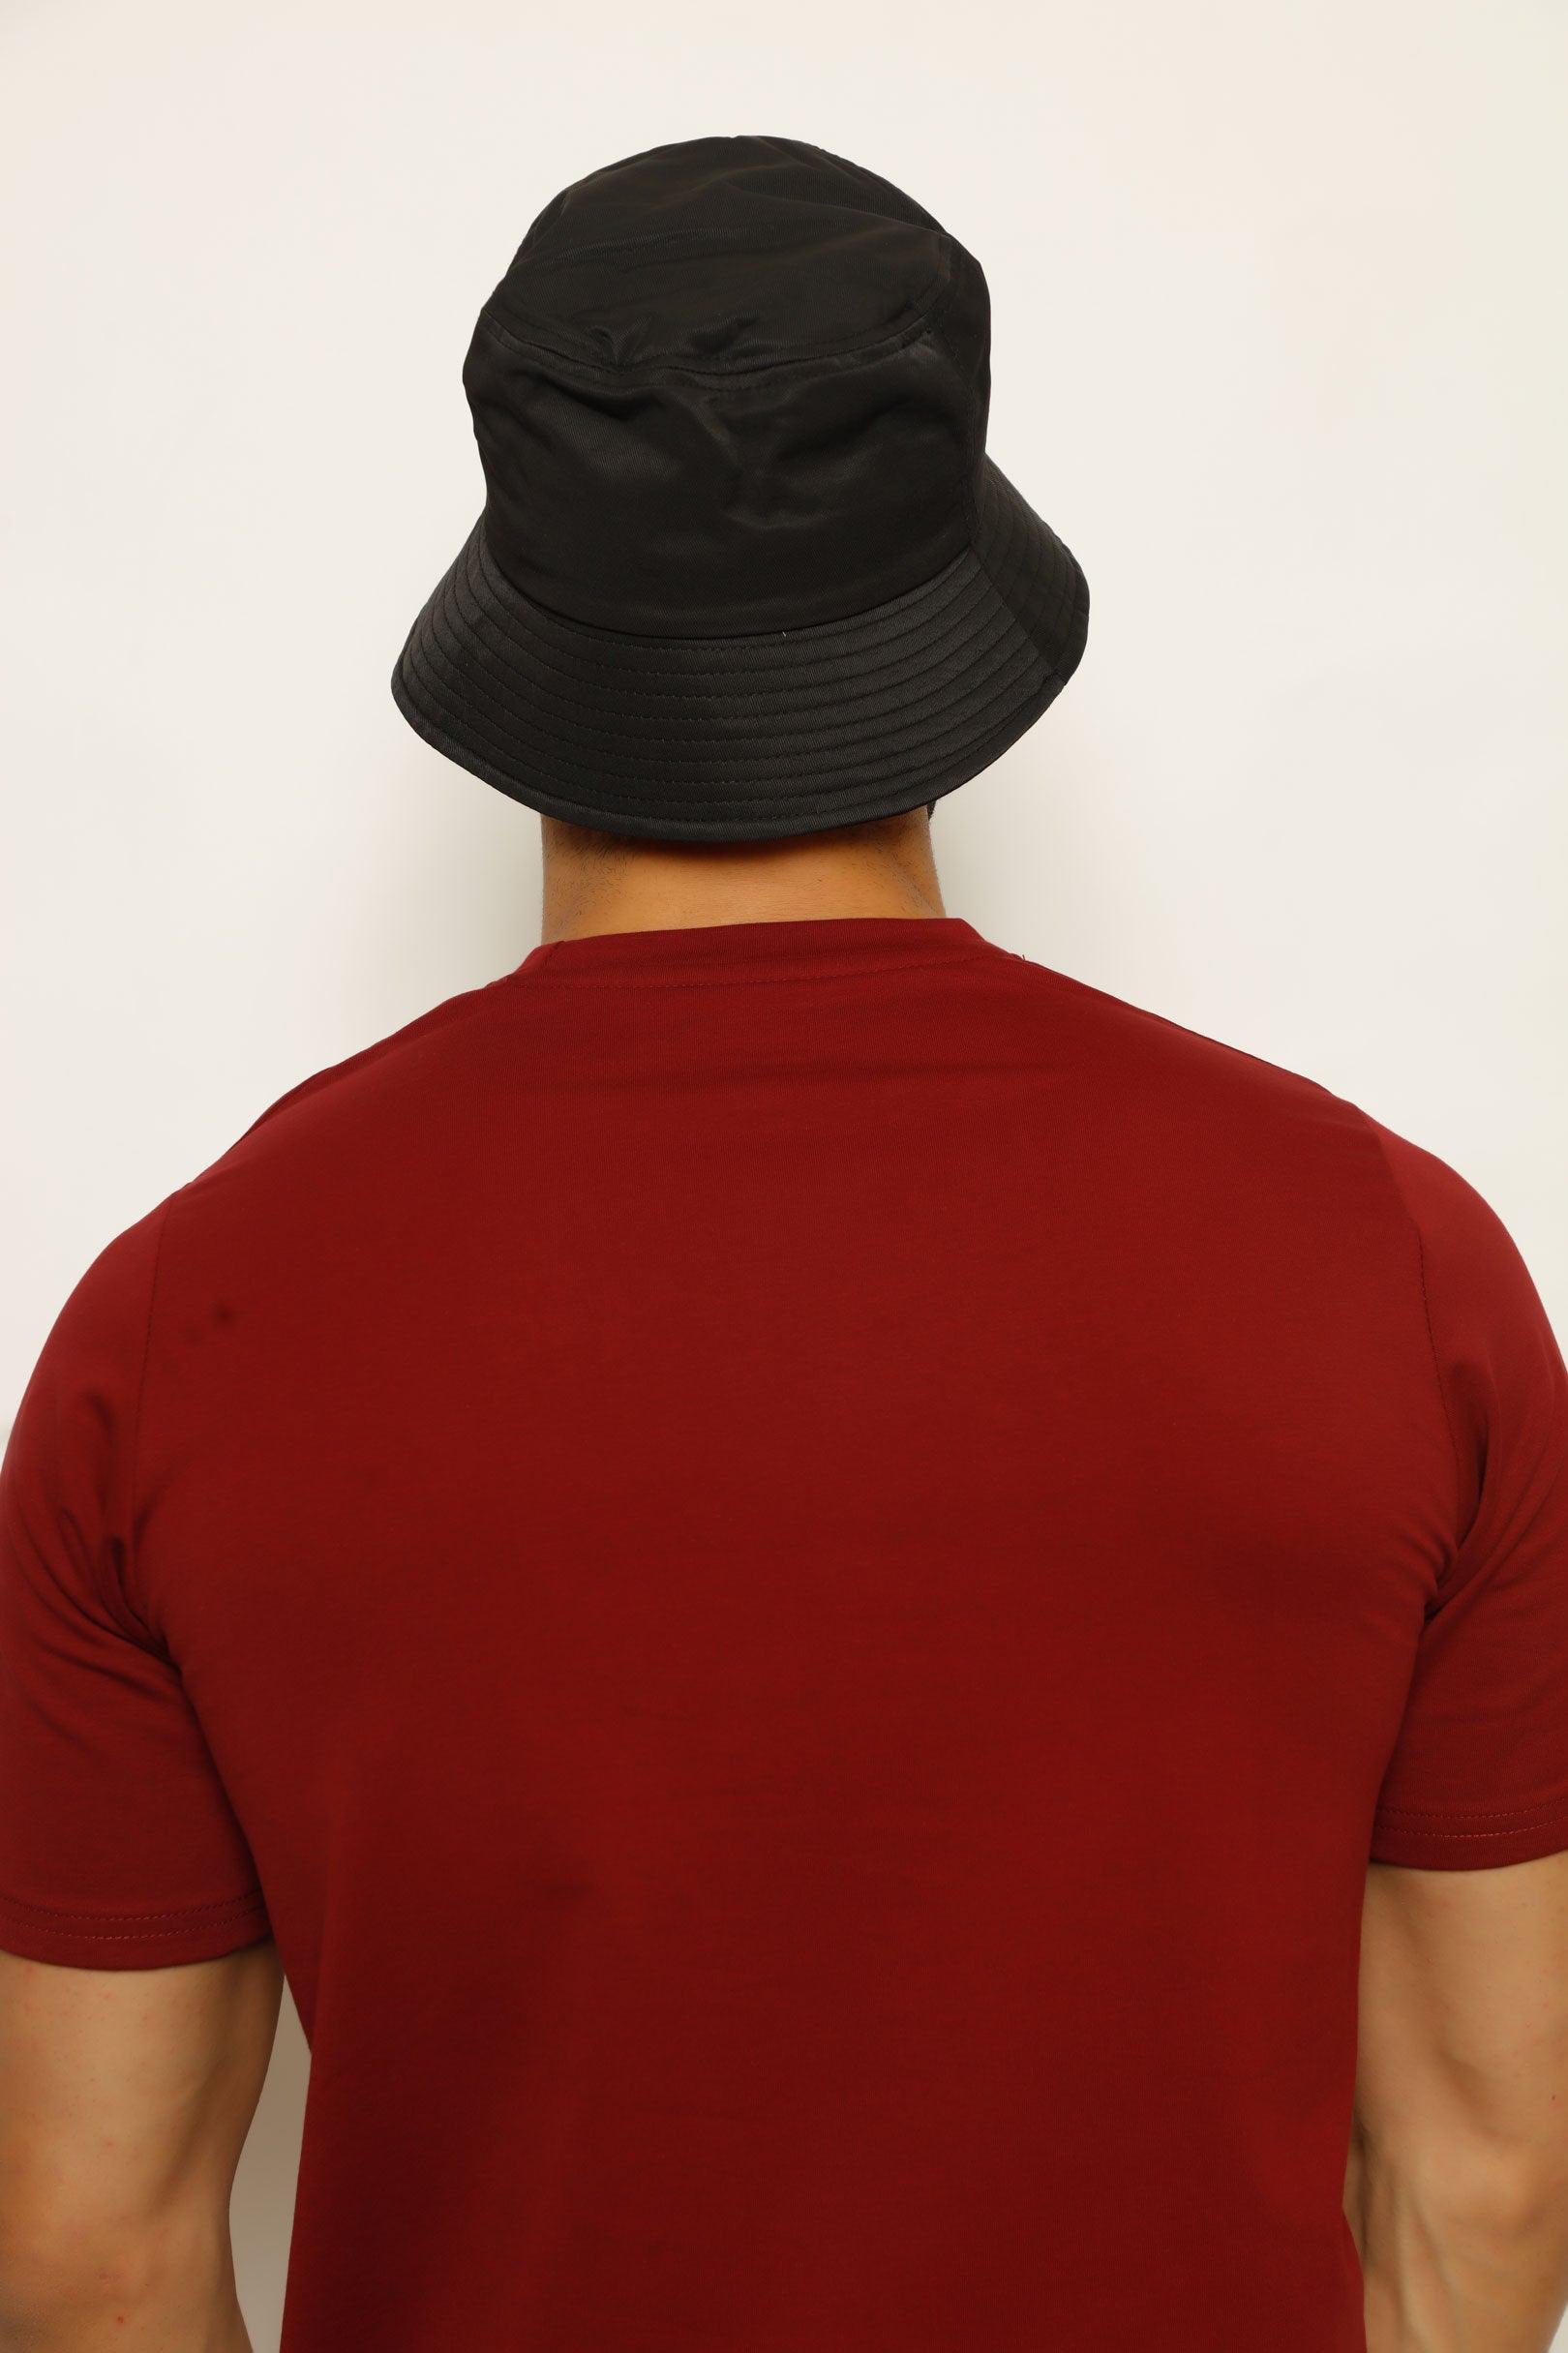 SL BINIE WAWAY_MEN'S CAP, CAP, CORADO, accessories, black, cap, men, coradomoda, coradomoda.com